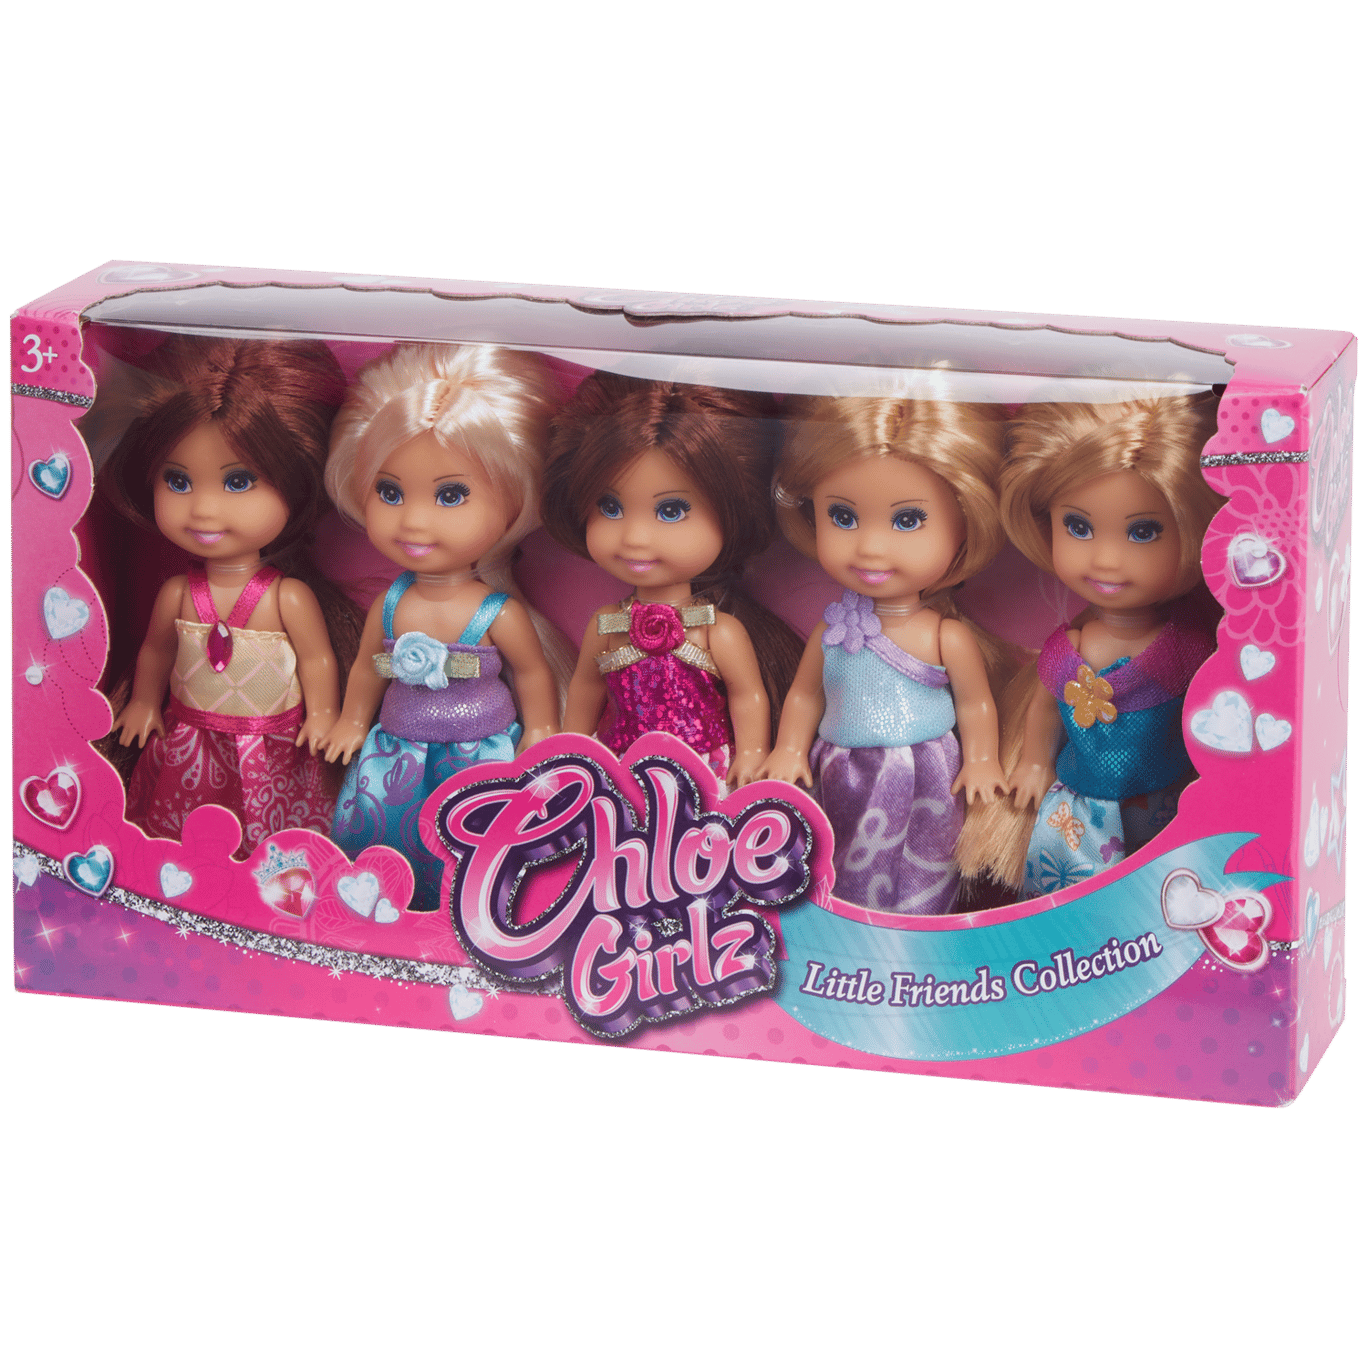 Bambole Chloe Girlz